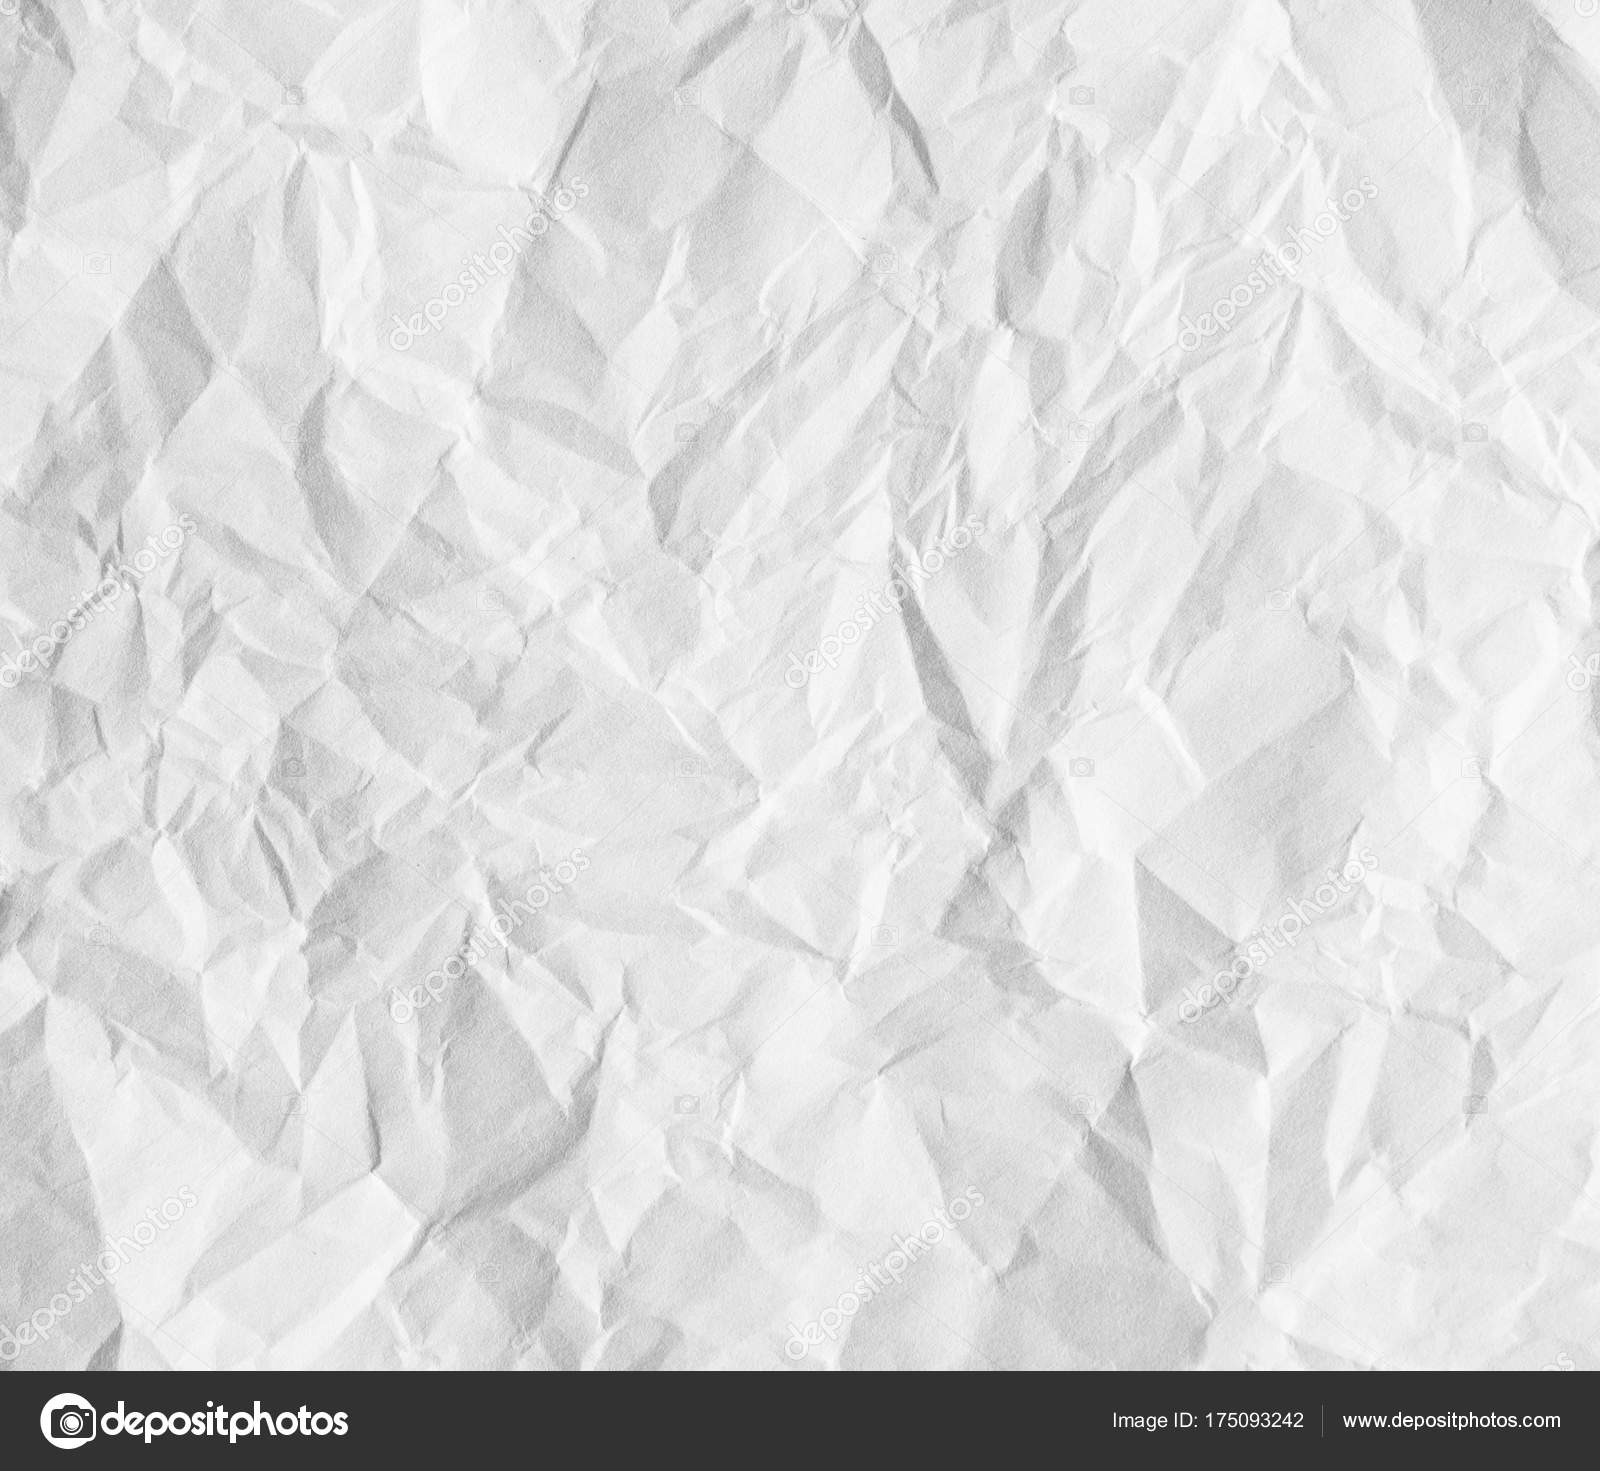 Crumpled paper texture. — Stock Photo © Alexeybykov #175093242